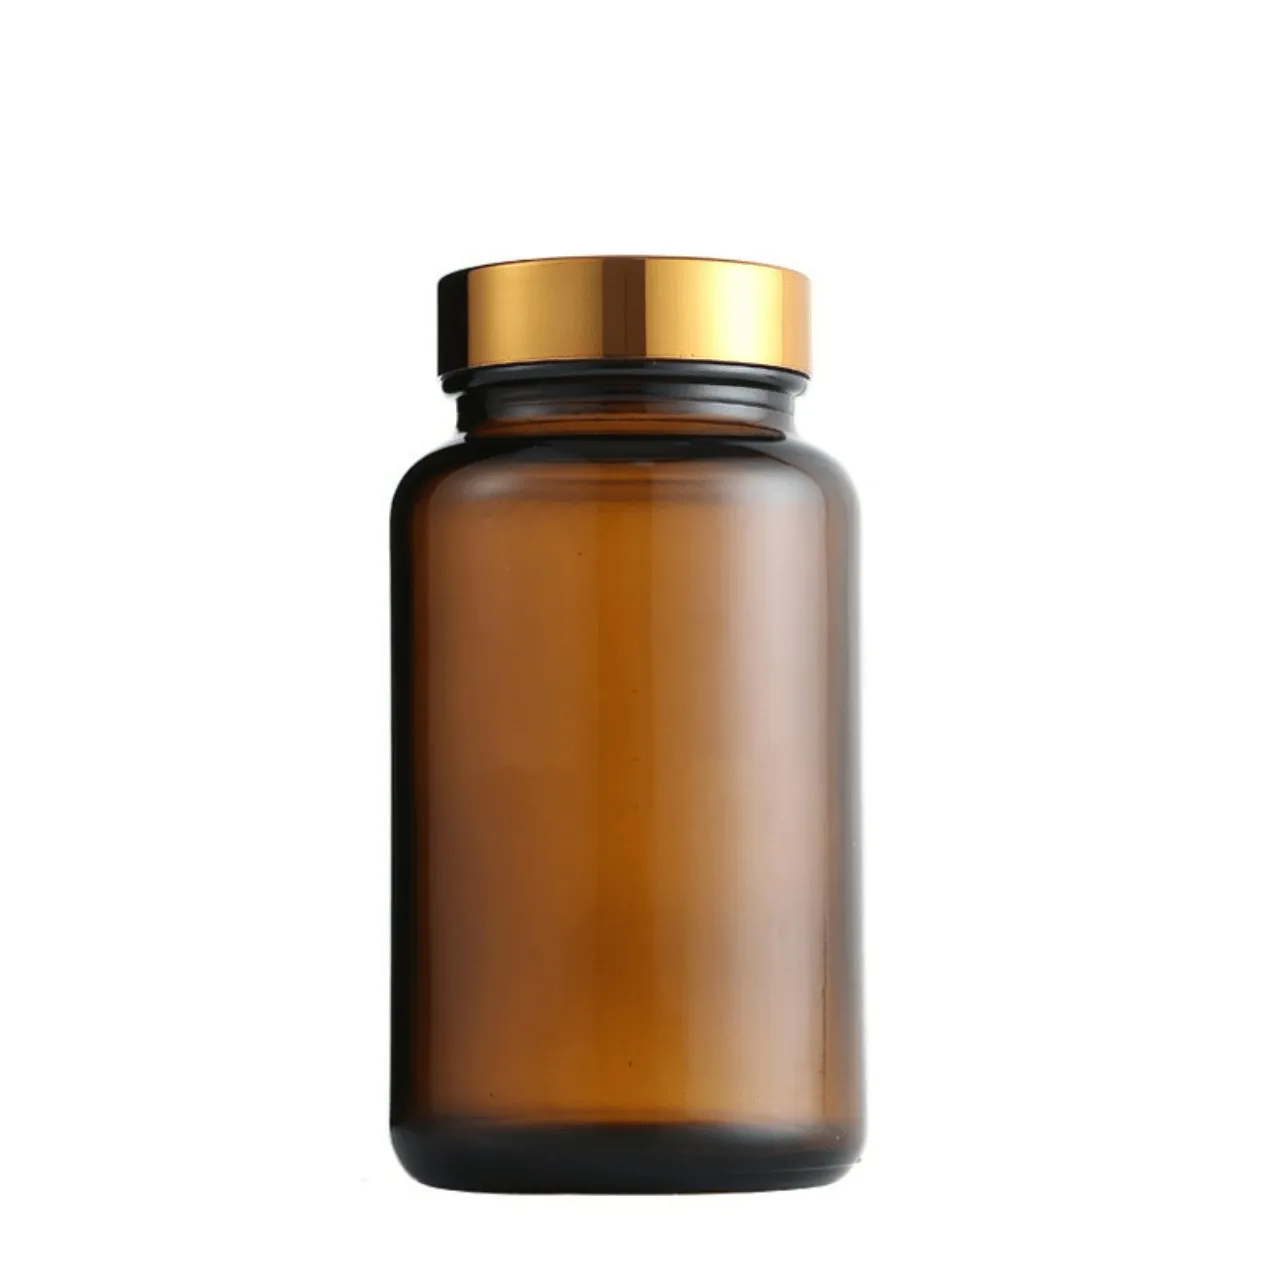 60 80100120150200250ml琥珀色のガラスボトルゴールドキャップ付きの空のタブレットボトル500ml琥珀色のビタミン補助ボトル